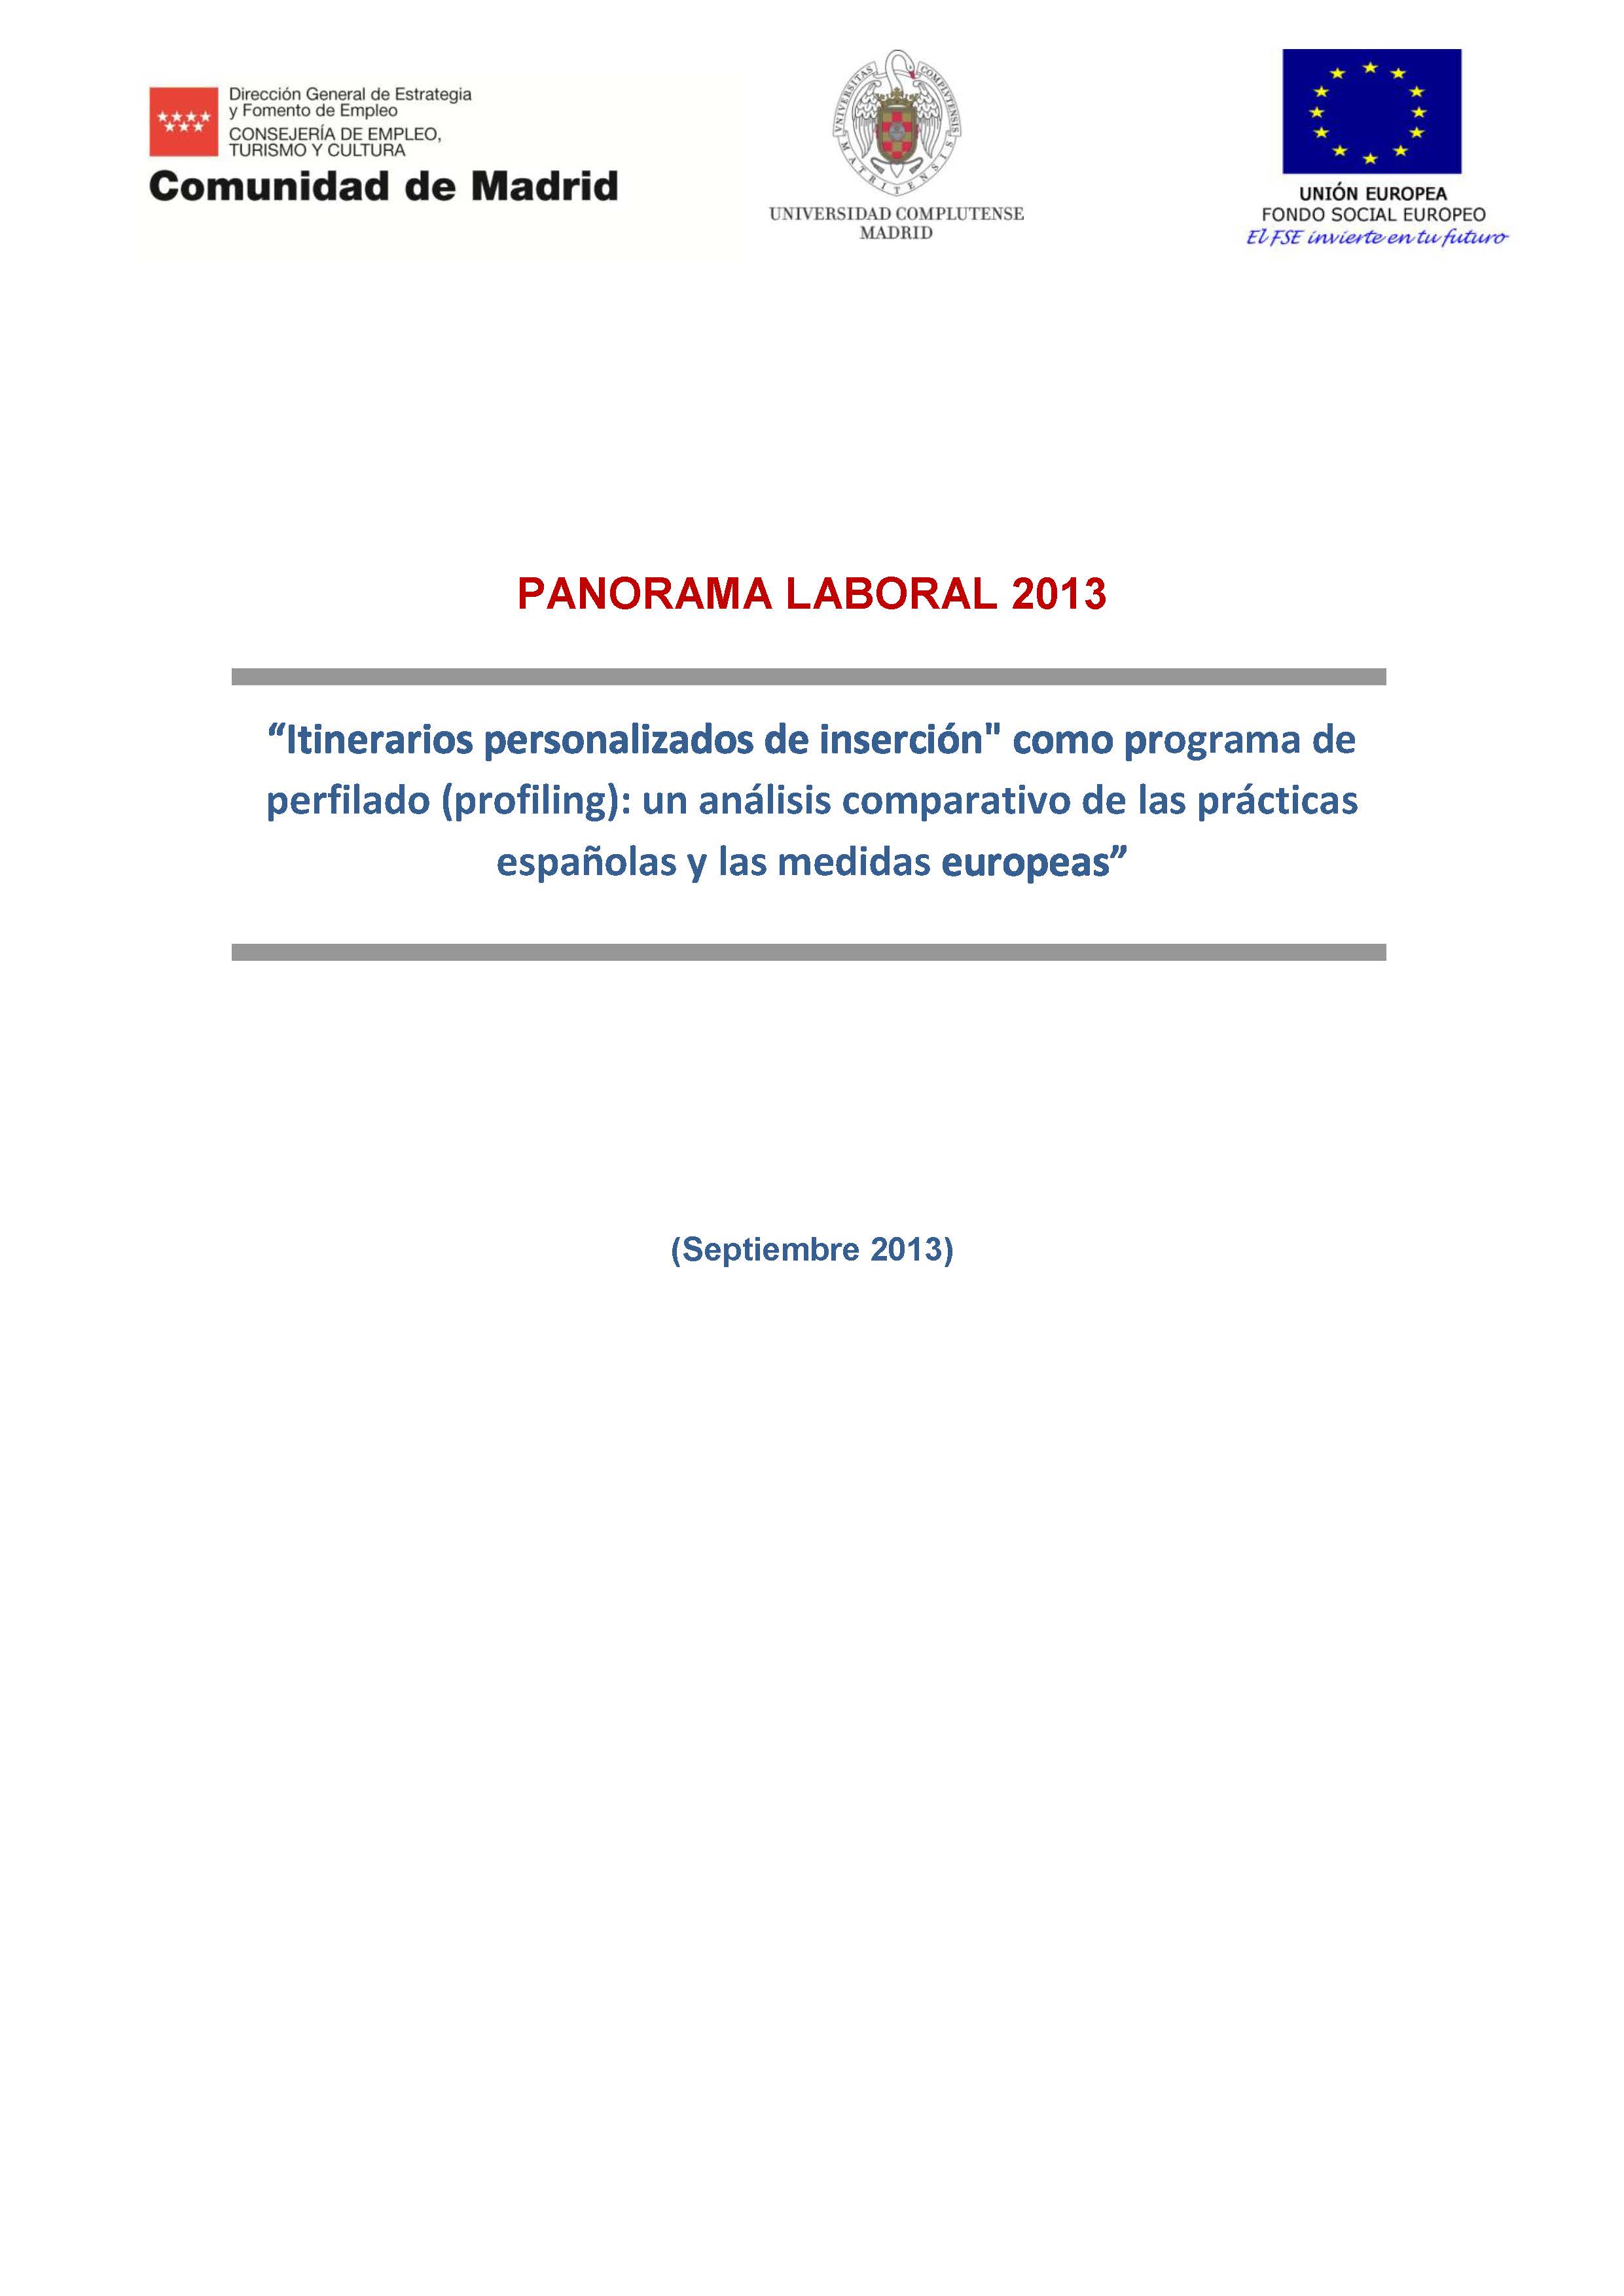 Portada de Panorama Laboral 2013 Itinerarios personalizados de inserción como programa perfilado (profiling): un análisis comparativo de las prácticas españolas y las medidas europeas 